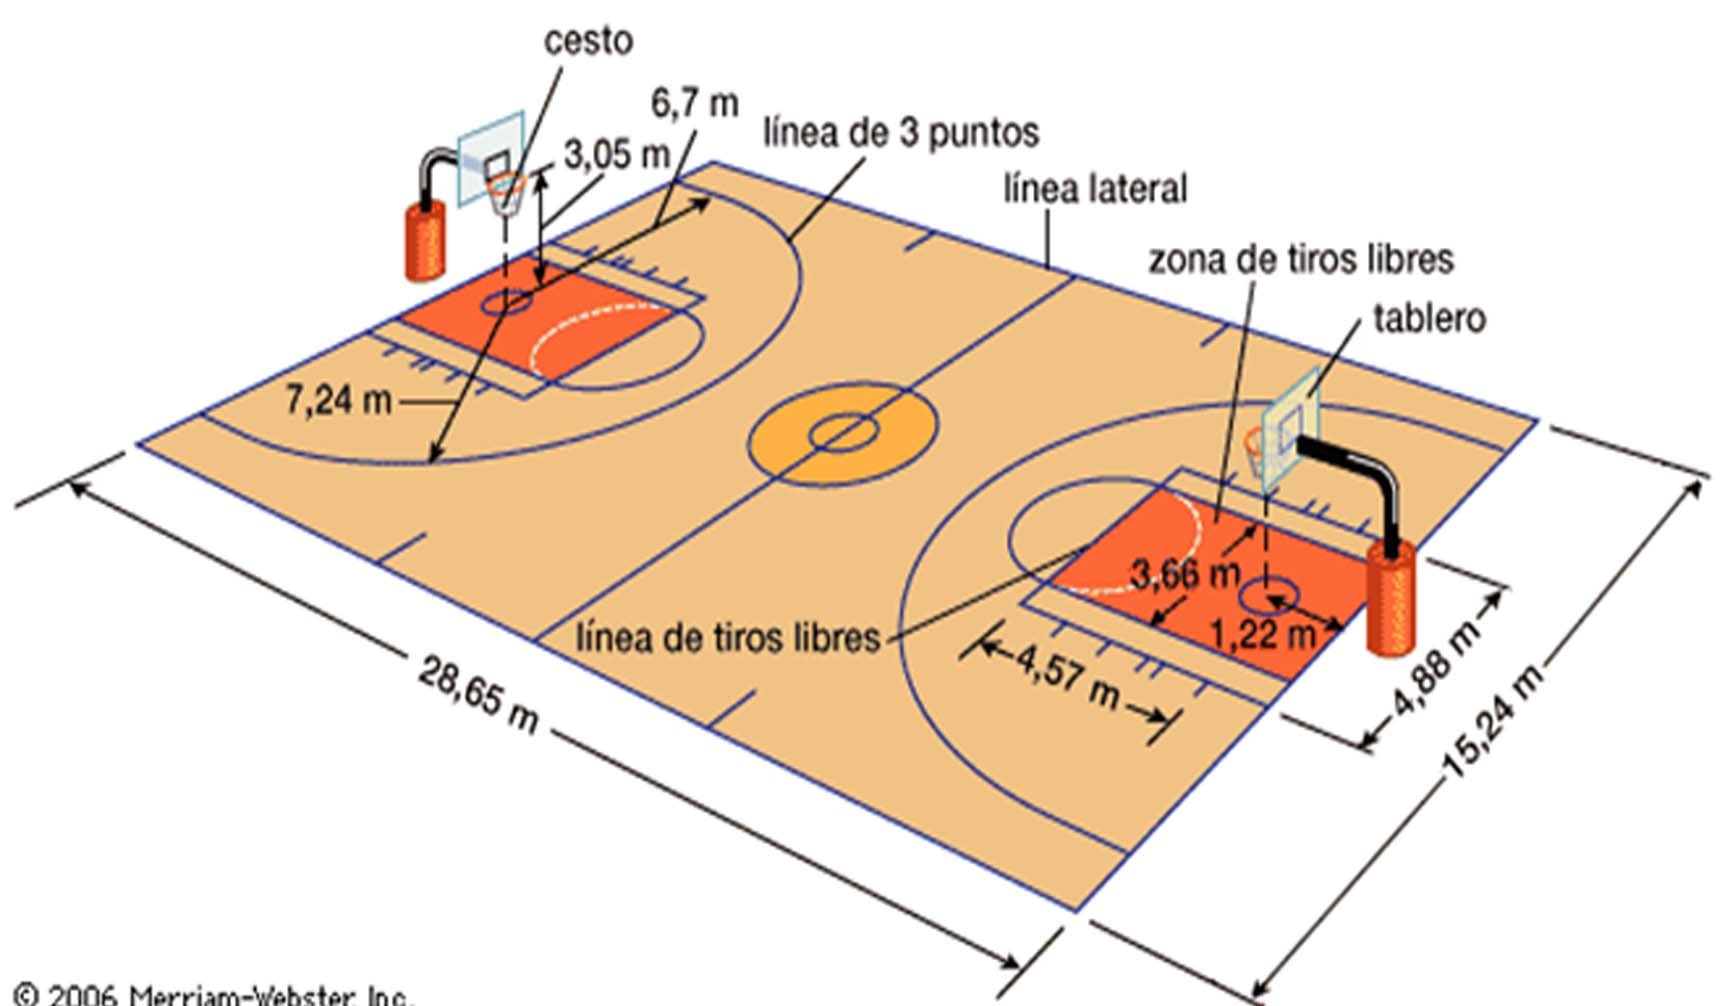 Официальные правила баскетбола фиба действуют. Баскетбольное поле схема разметки линий. Разметка баскетбольной площадки 25х15. Нарисовать разметку баскетбольной площадки. Размеры баскетбольной площадки.